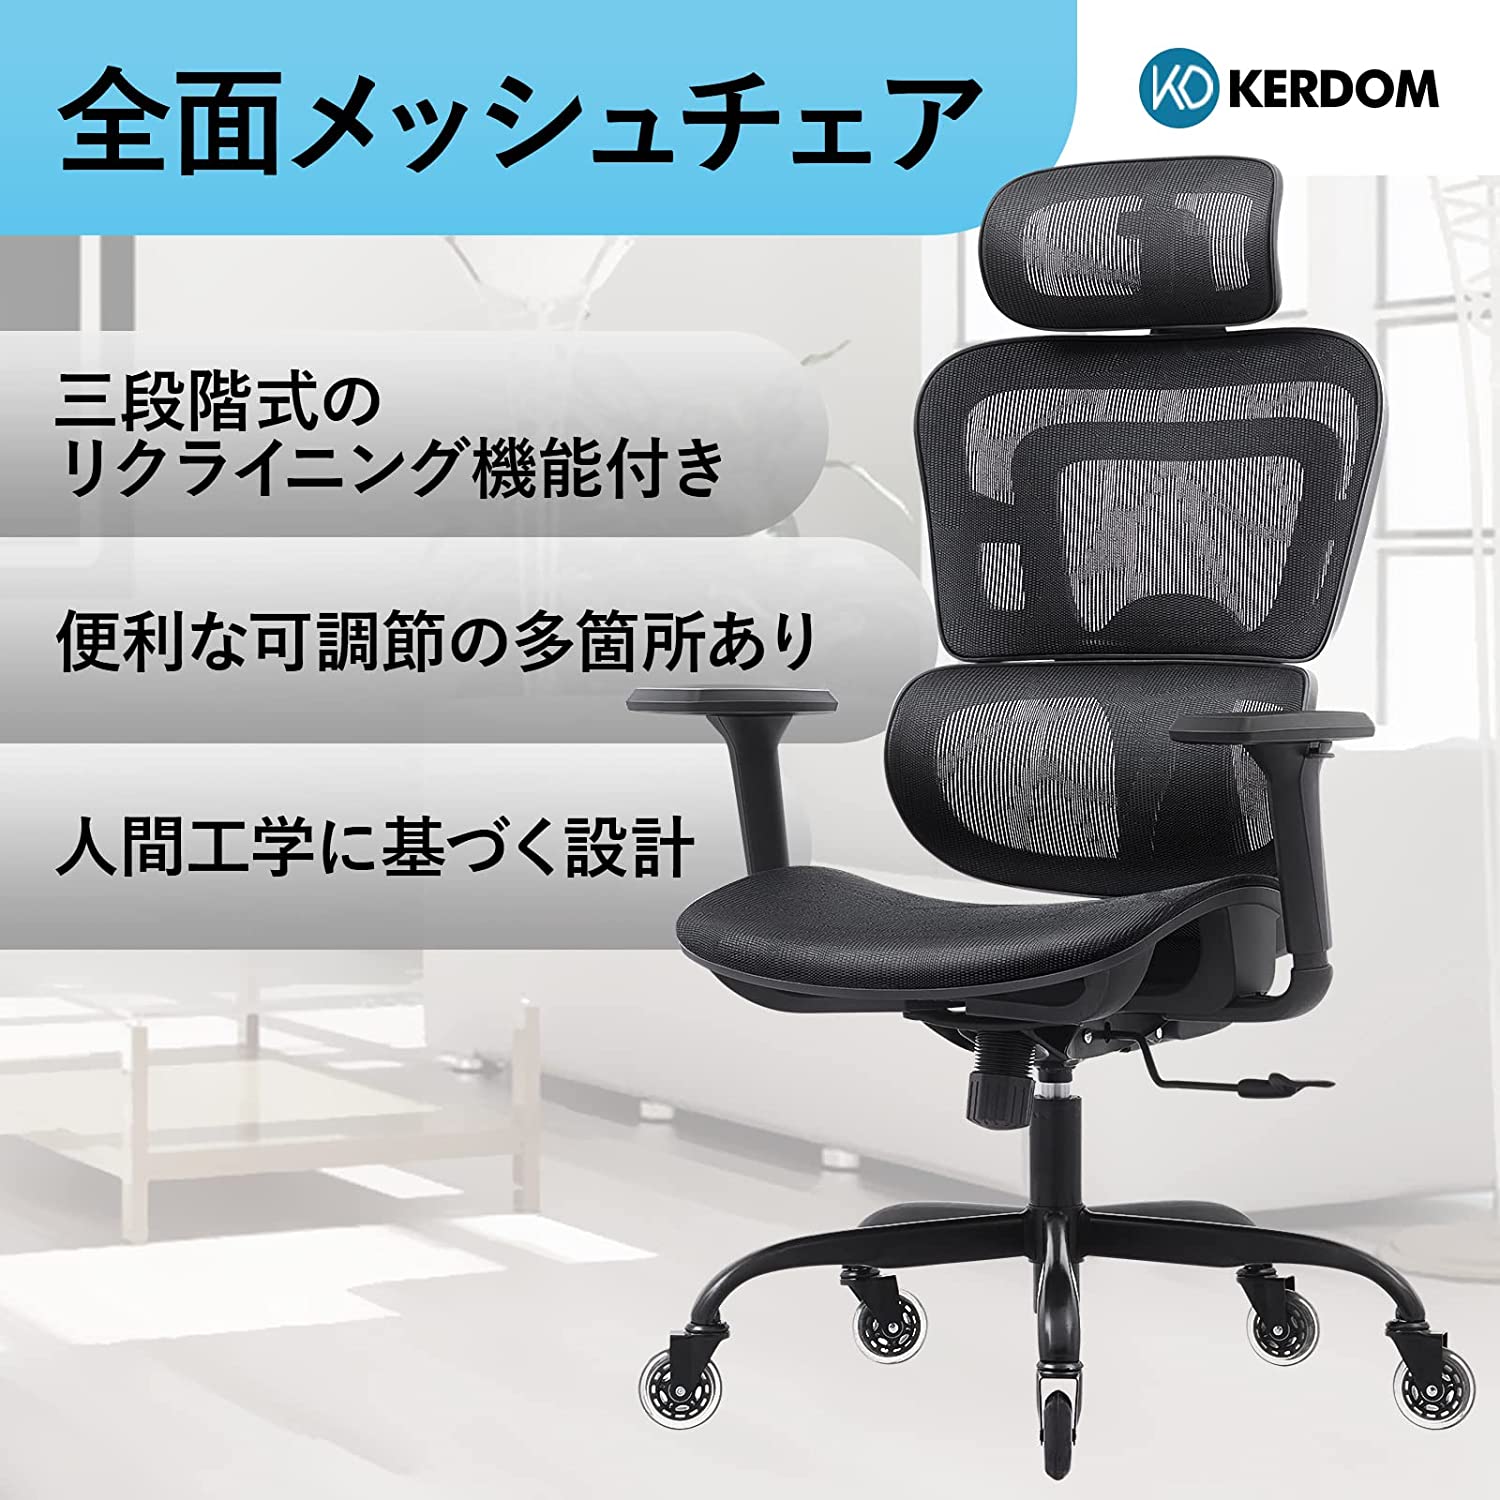 KERDOM 全面メッシュチェア ワークチェア オフィスチェア リクライニングチェア 人間工学椅子 デスクチェア テレワーク 3Dアームレスト  可動式ヘッドレスト ロッキング 360度回転 多機能 通気性 事務 おしゃれ Provide The Best 